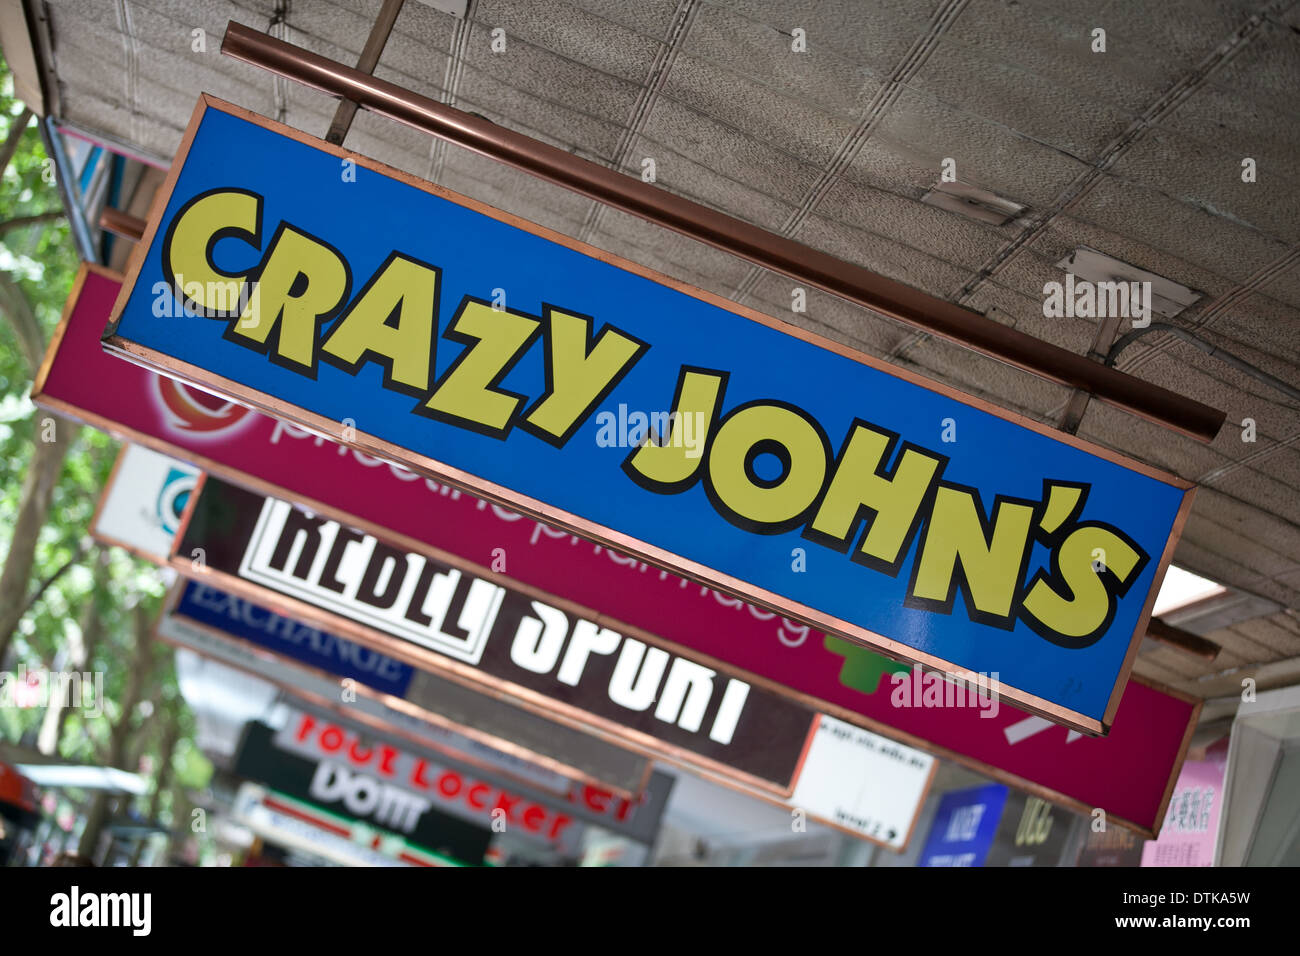 Crazy John's telefono mobile store, Melbourne Foto Stock